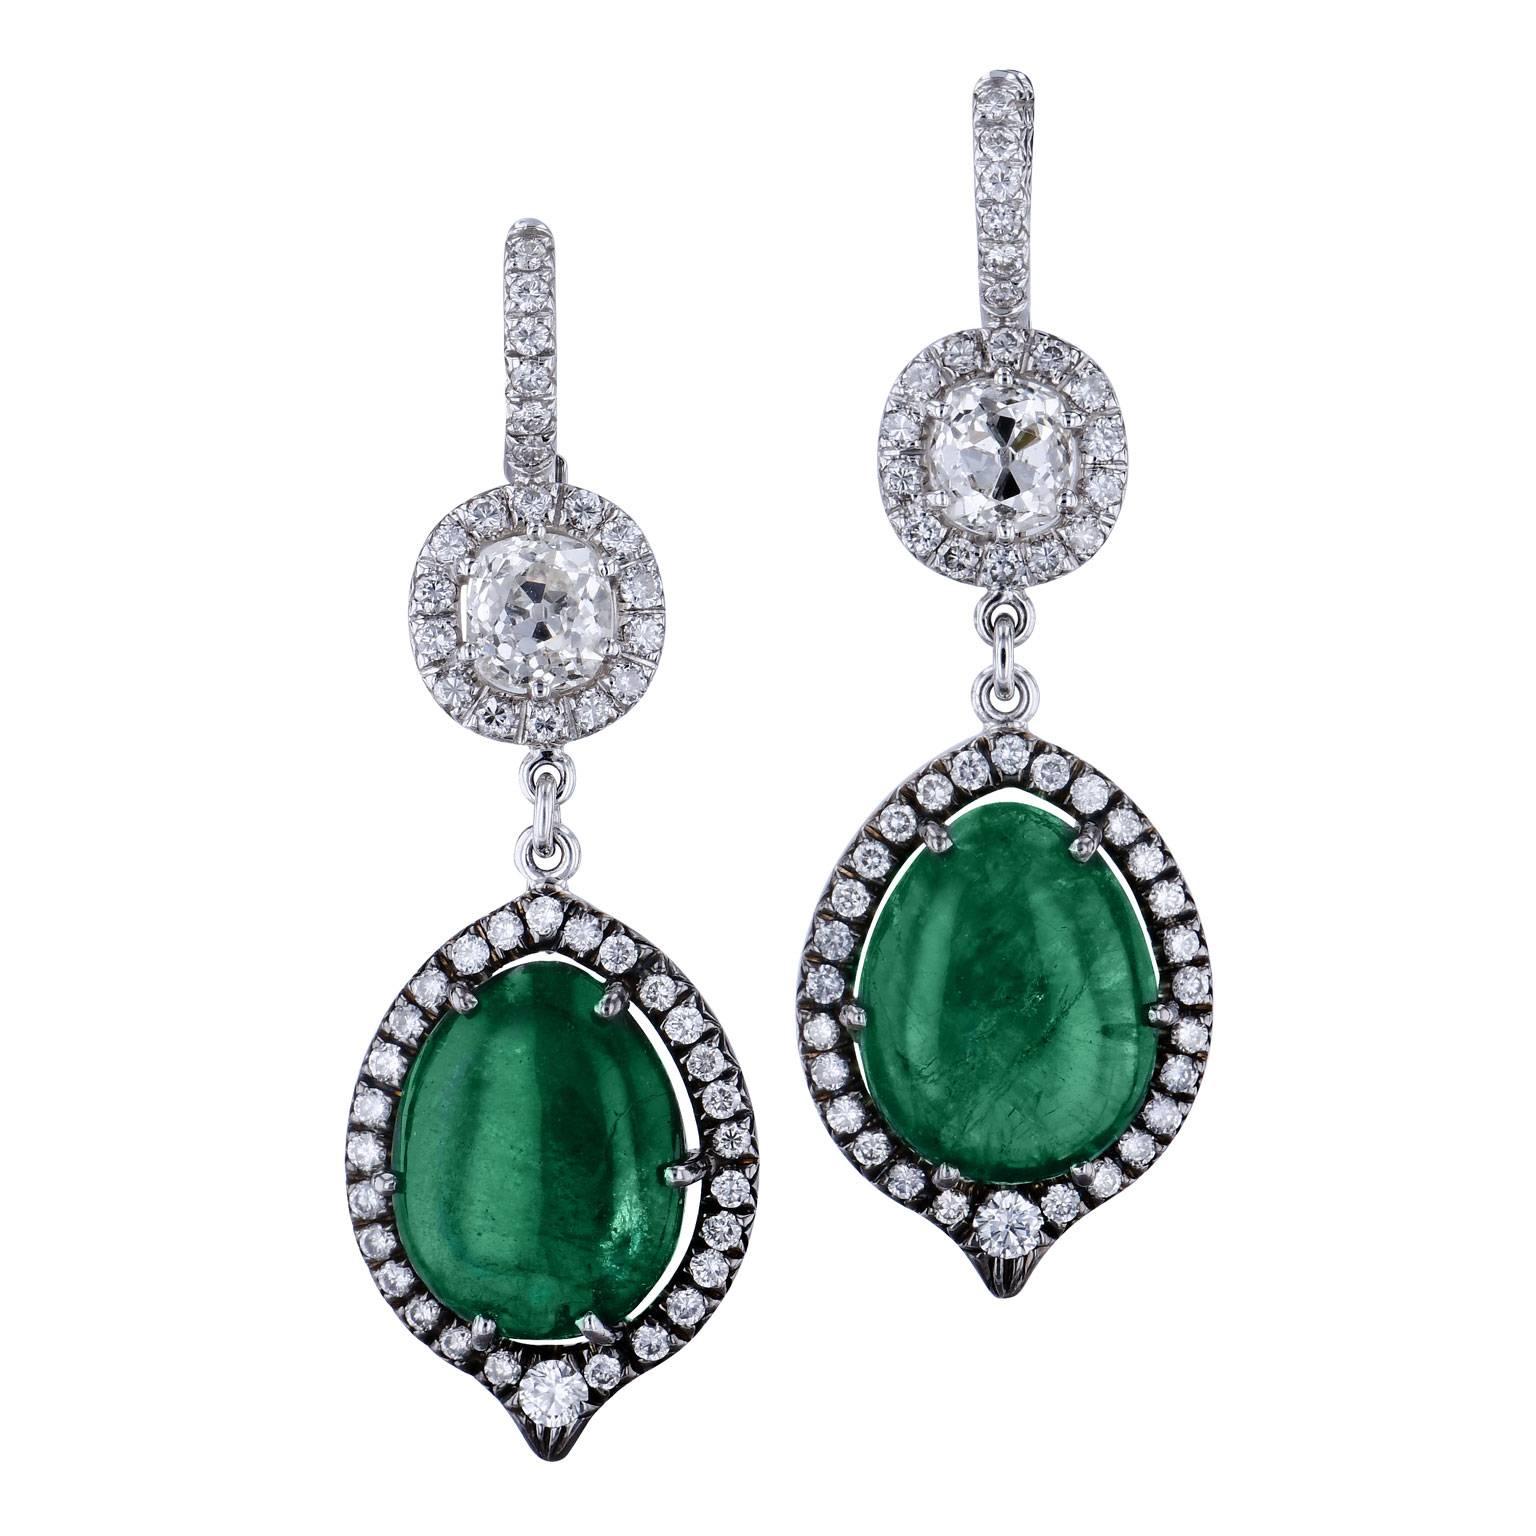 15.64 Carat Zambian Tear Drop Emerald and 1.05 carat of Diamond Earrings 18 kt